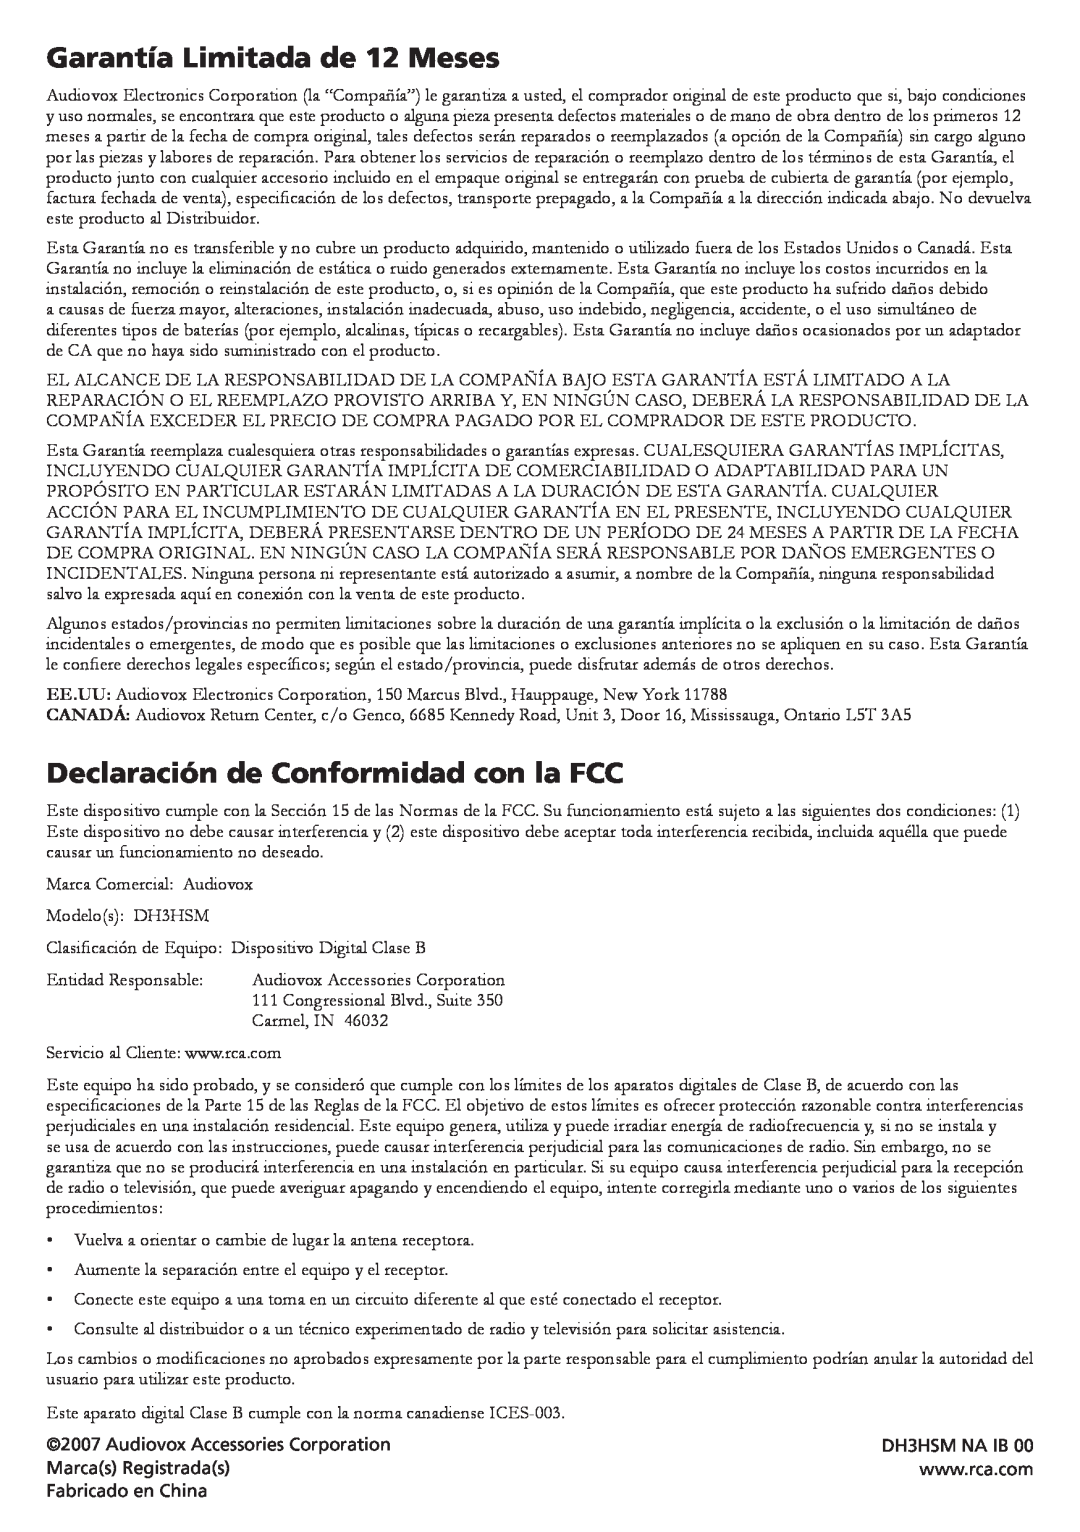 RCA DH3HSM specifications Garantía Limitada de 12 Meses, Declaración de Conformidad con la FCC 